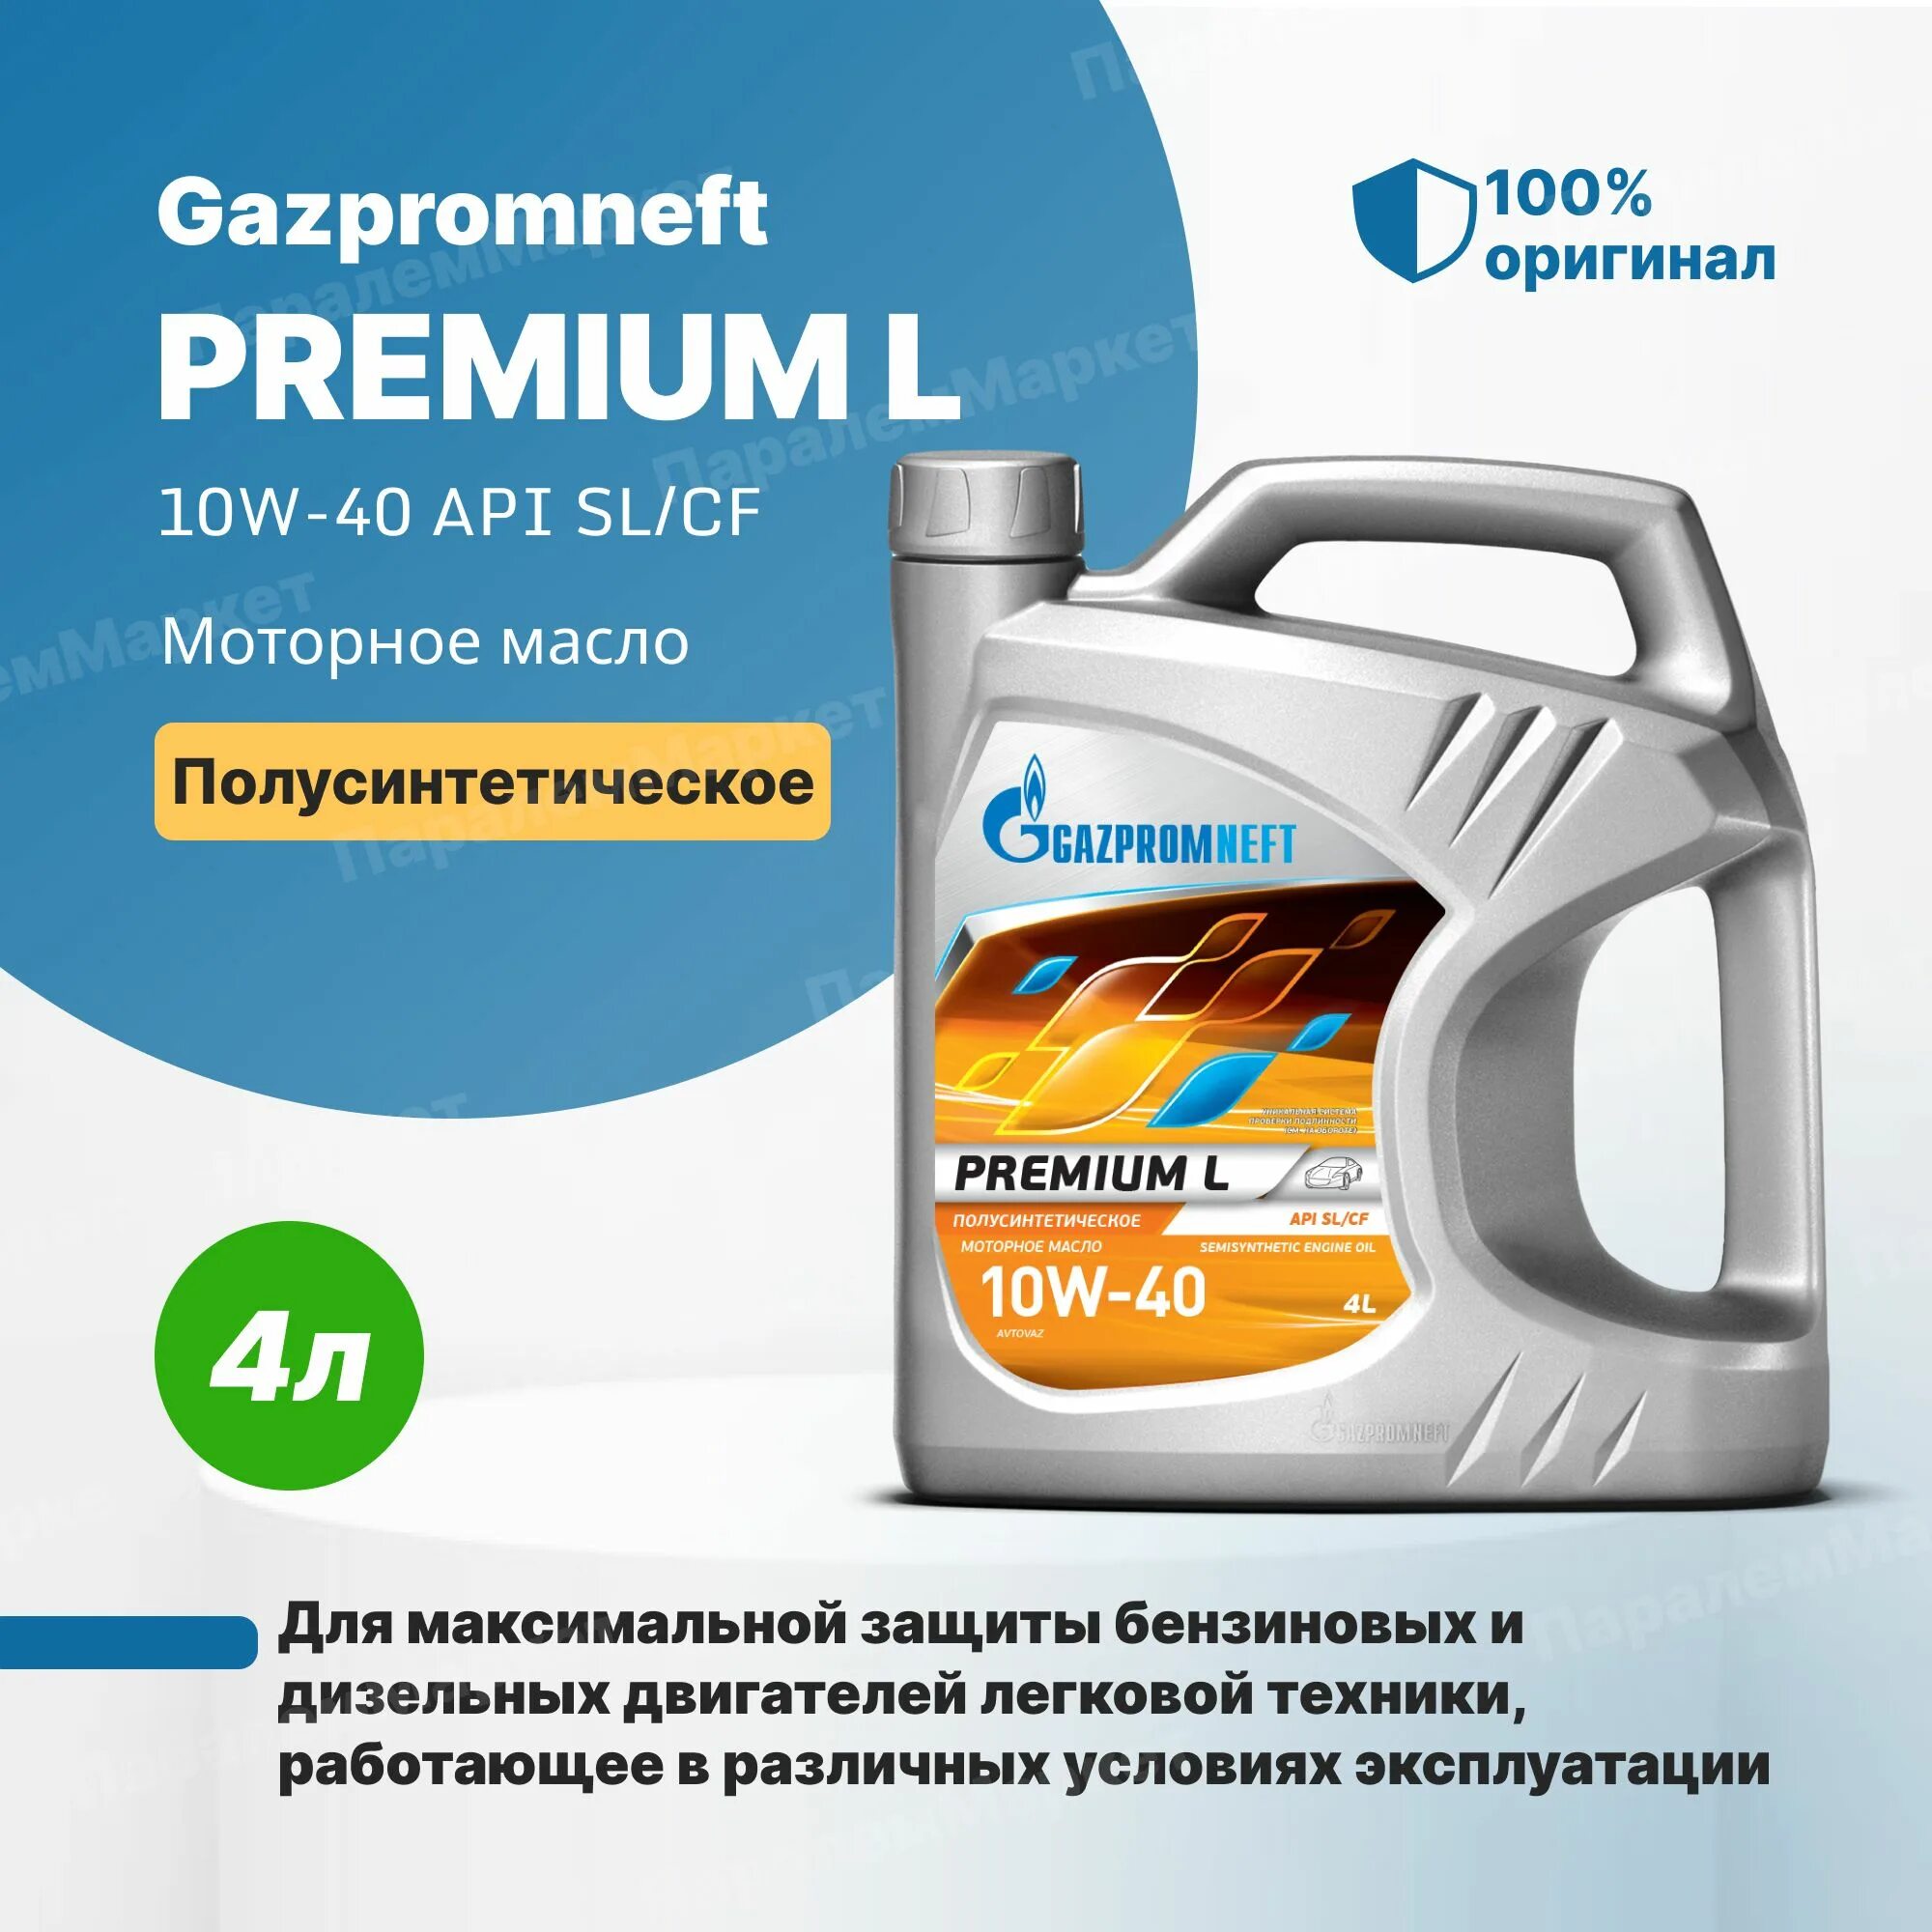 Gazpromneft масло моторное Premium l 10w-40 полусинтетическое 4 л. Газпромнефть премиум л 10w-40. Масло Газпромнефть 10w 40 премиум л. Моторное масло газпромнефть 10w 40 отзывы